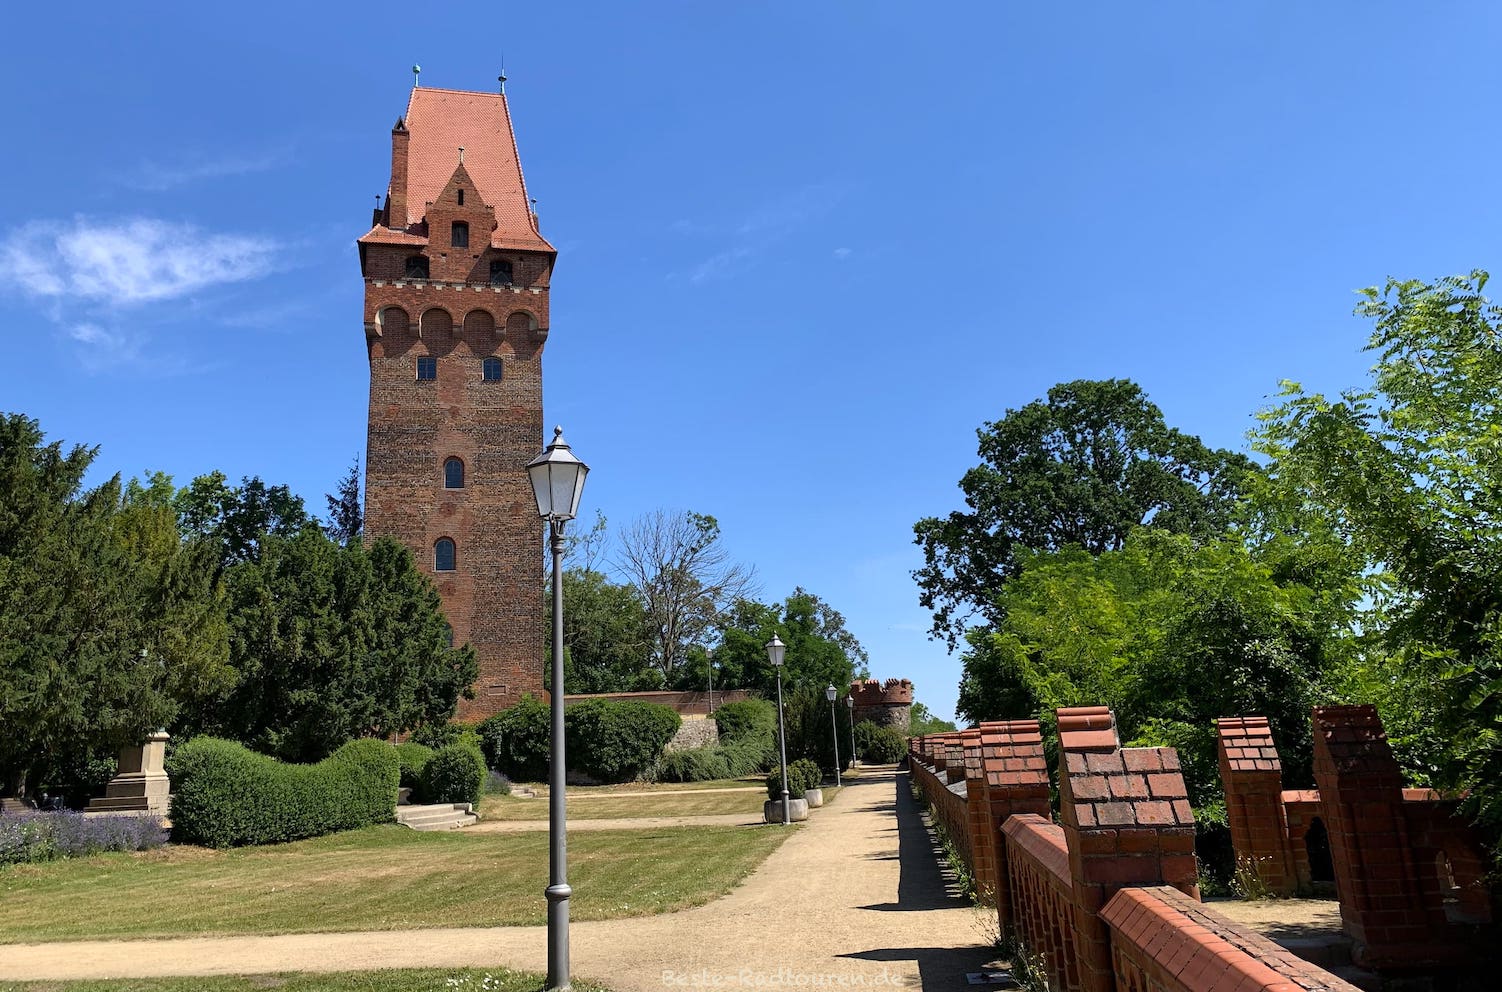 Teil der Burg Tangermünde mit Wachturm, kleinem Park und Brüstung